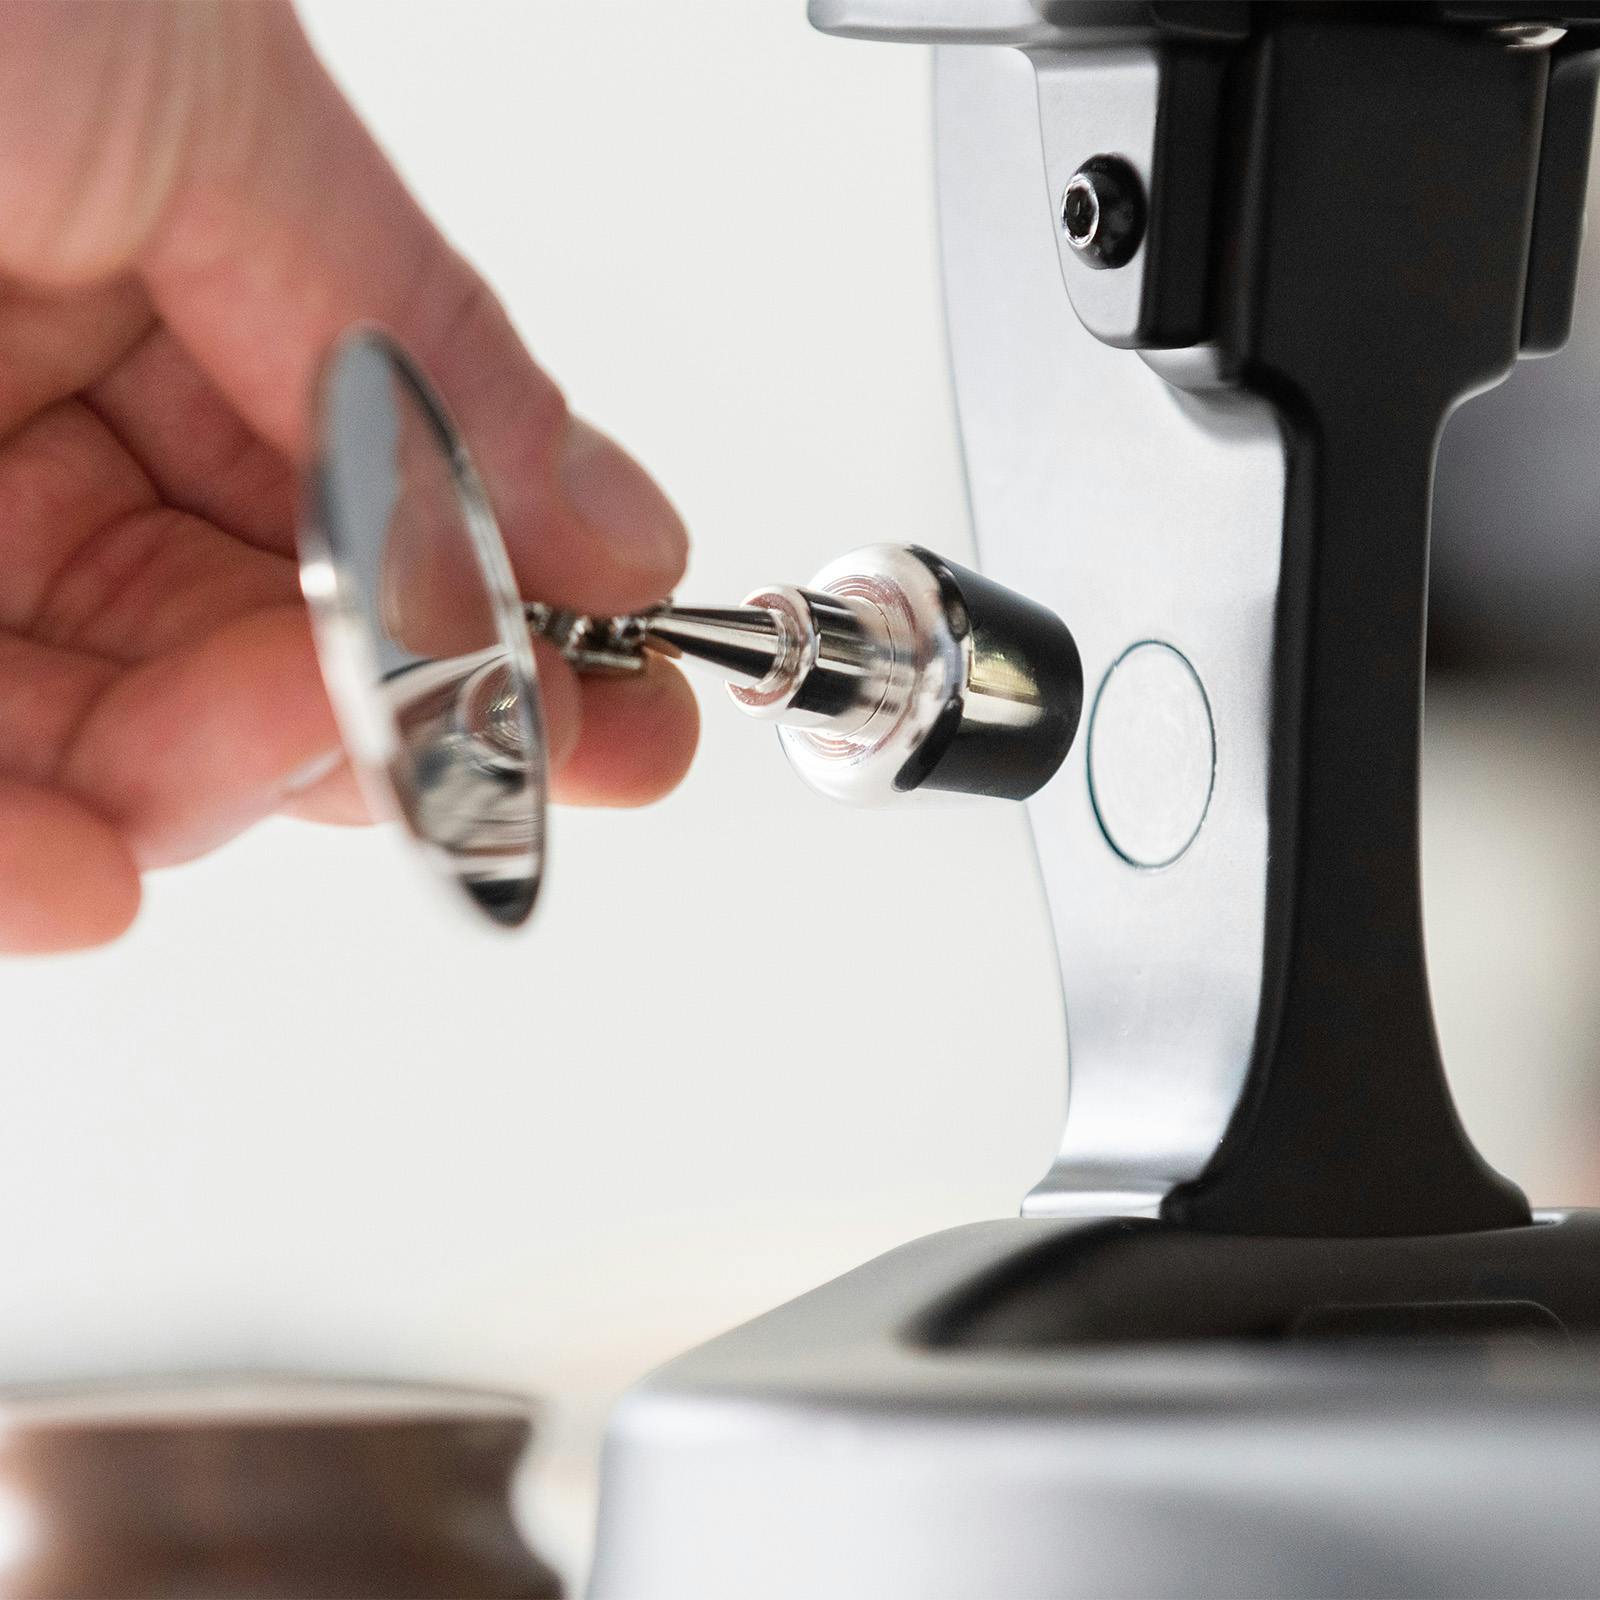 Precision Manual Espresso Machines : Flair 58 espresso press